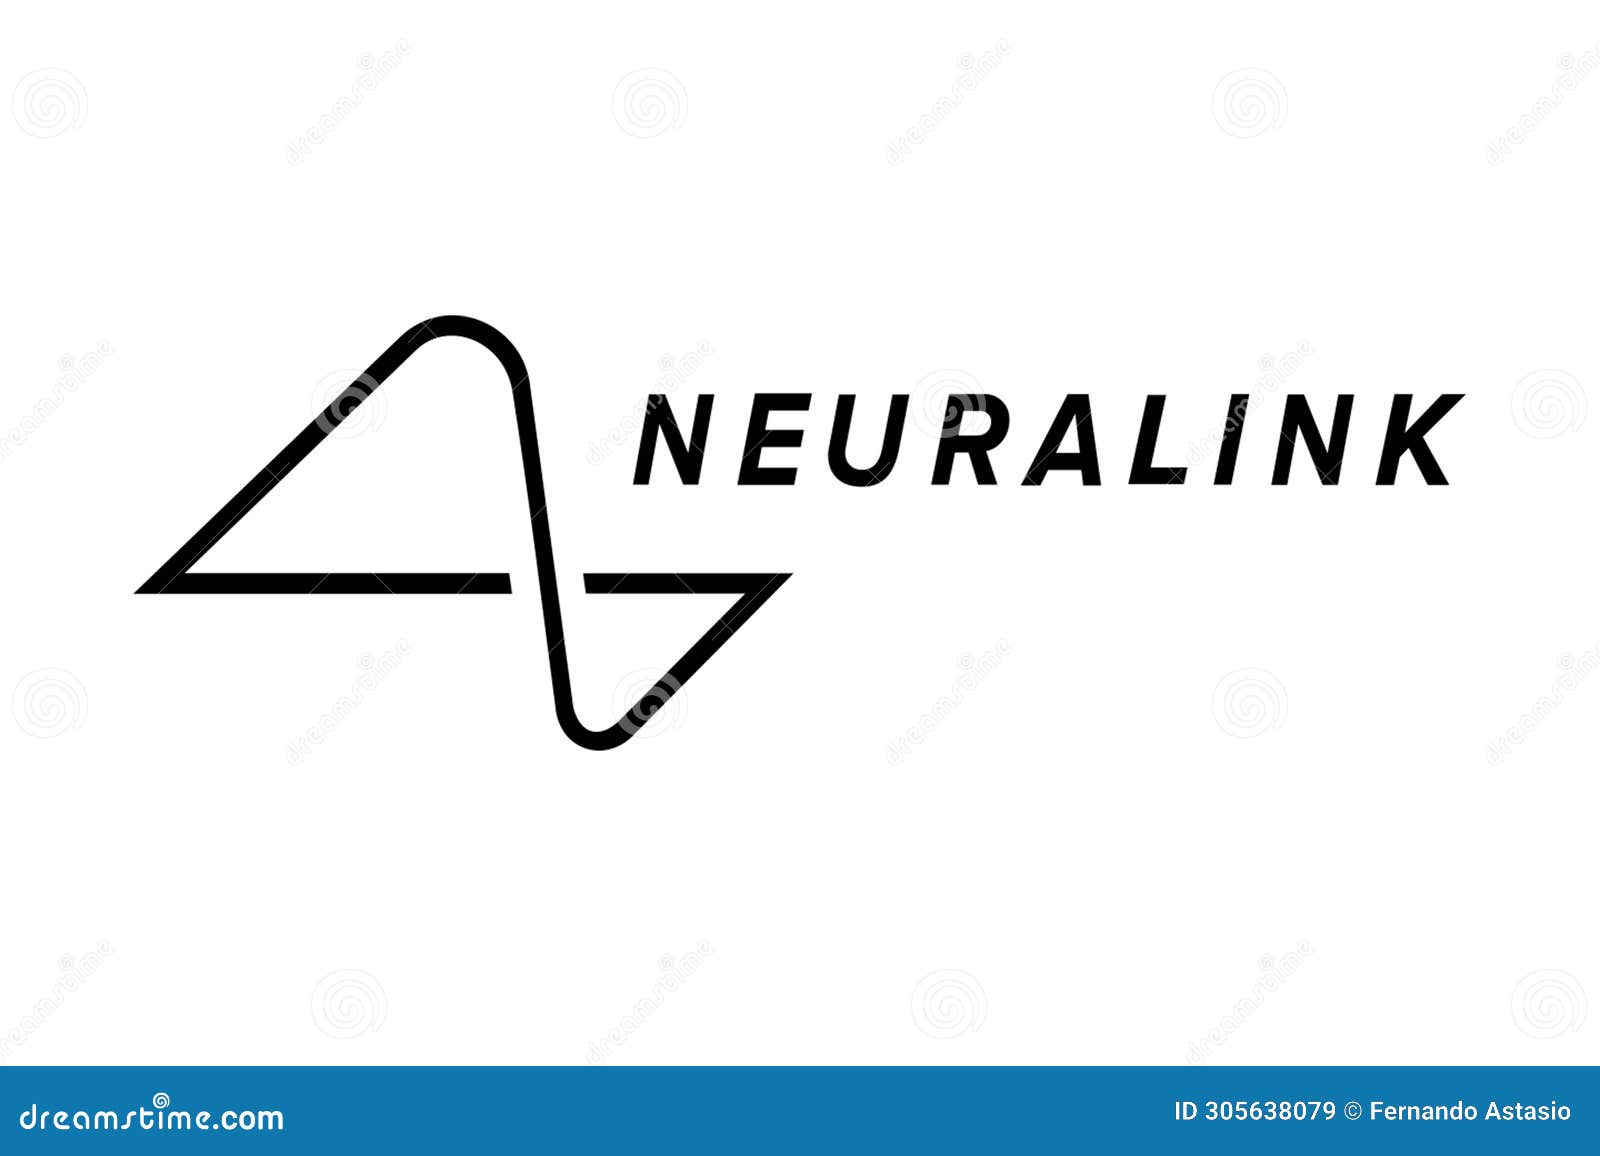 neuralink. elon musk artificial intelligence. neuralink has a device capable